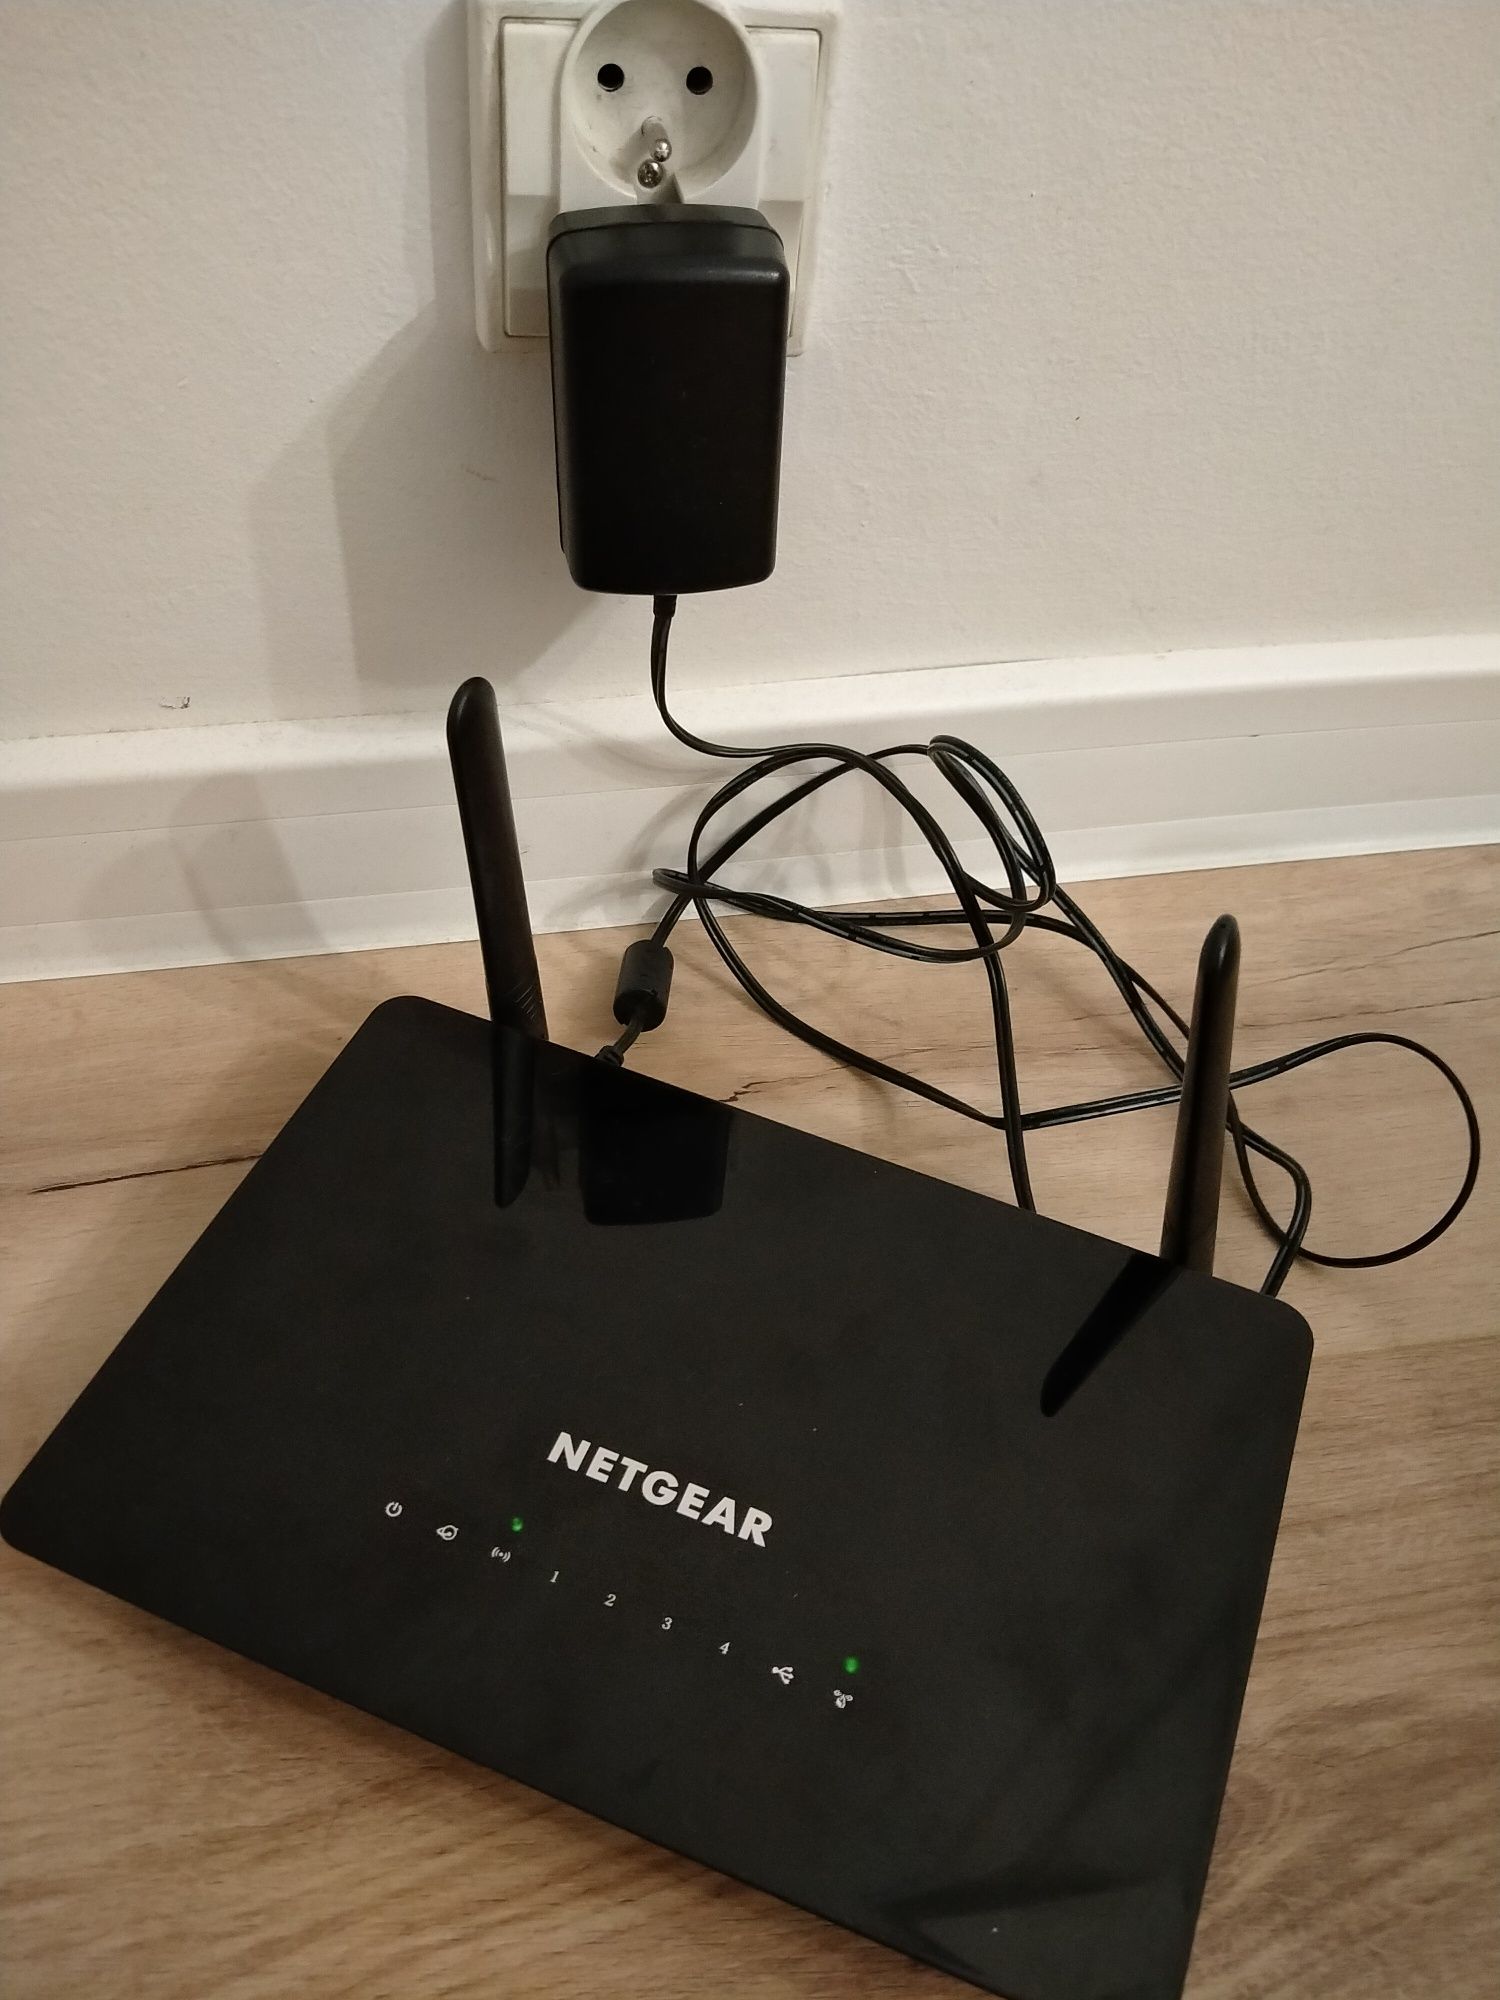 Router wifi NETGEAR - AC1200 model R6220